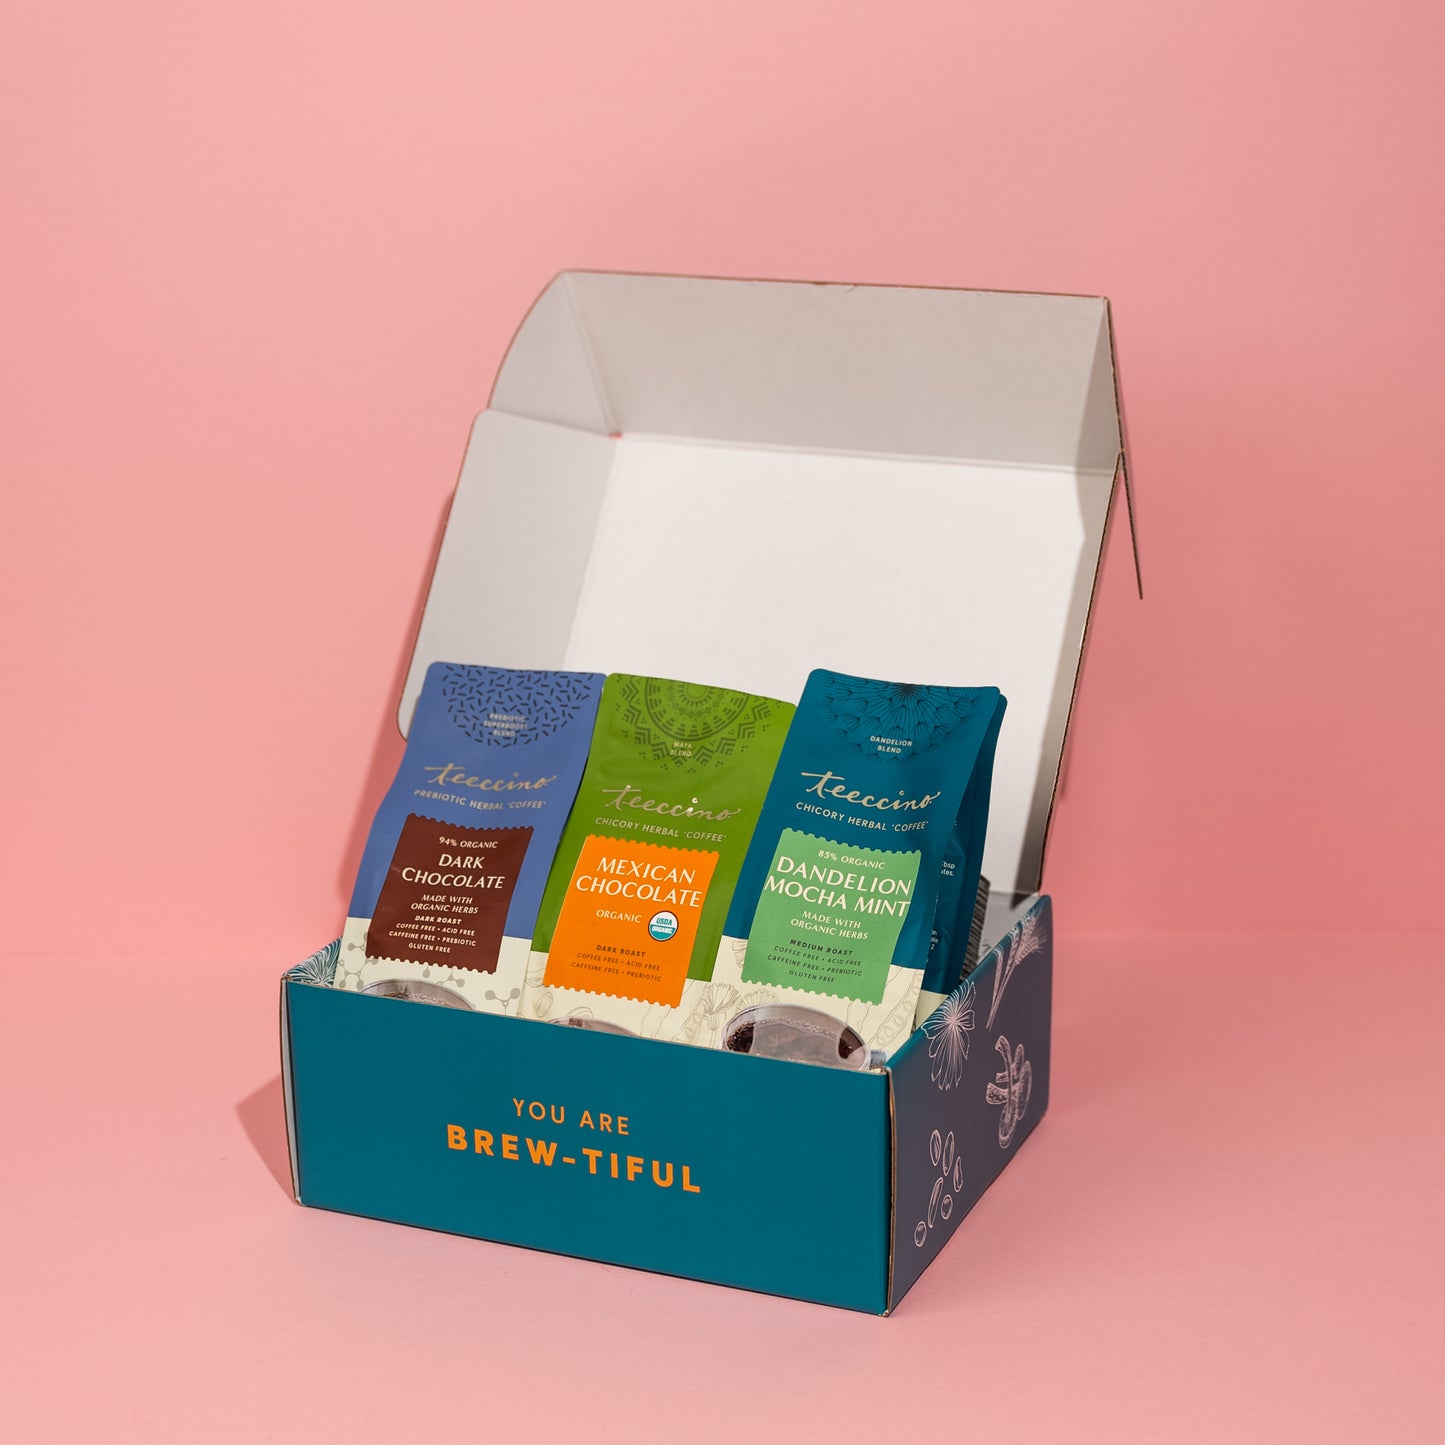 Chocolate Lovers Gift Box (Coffee & Tea Editions)